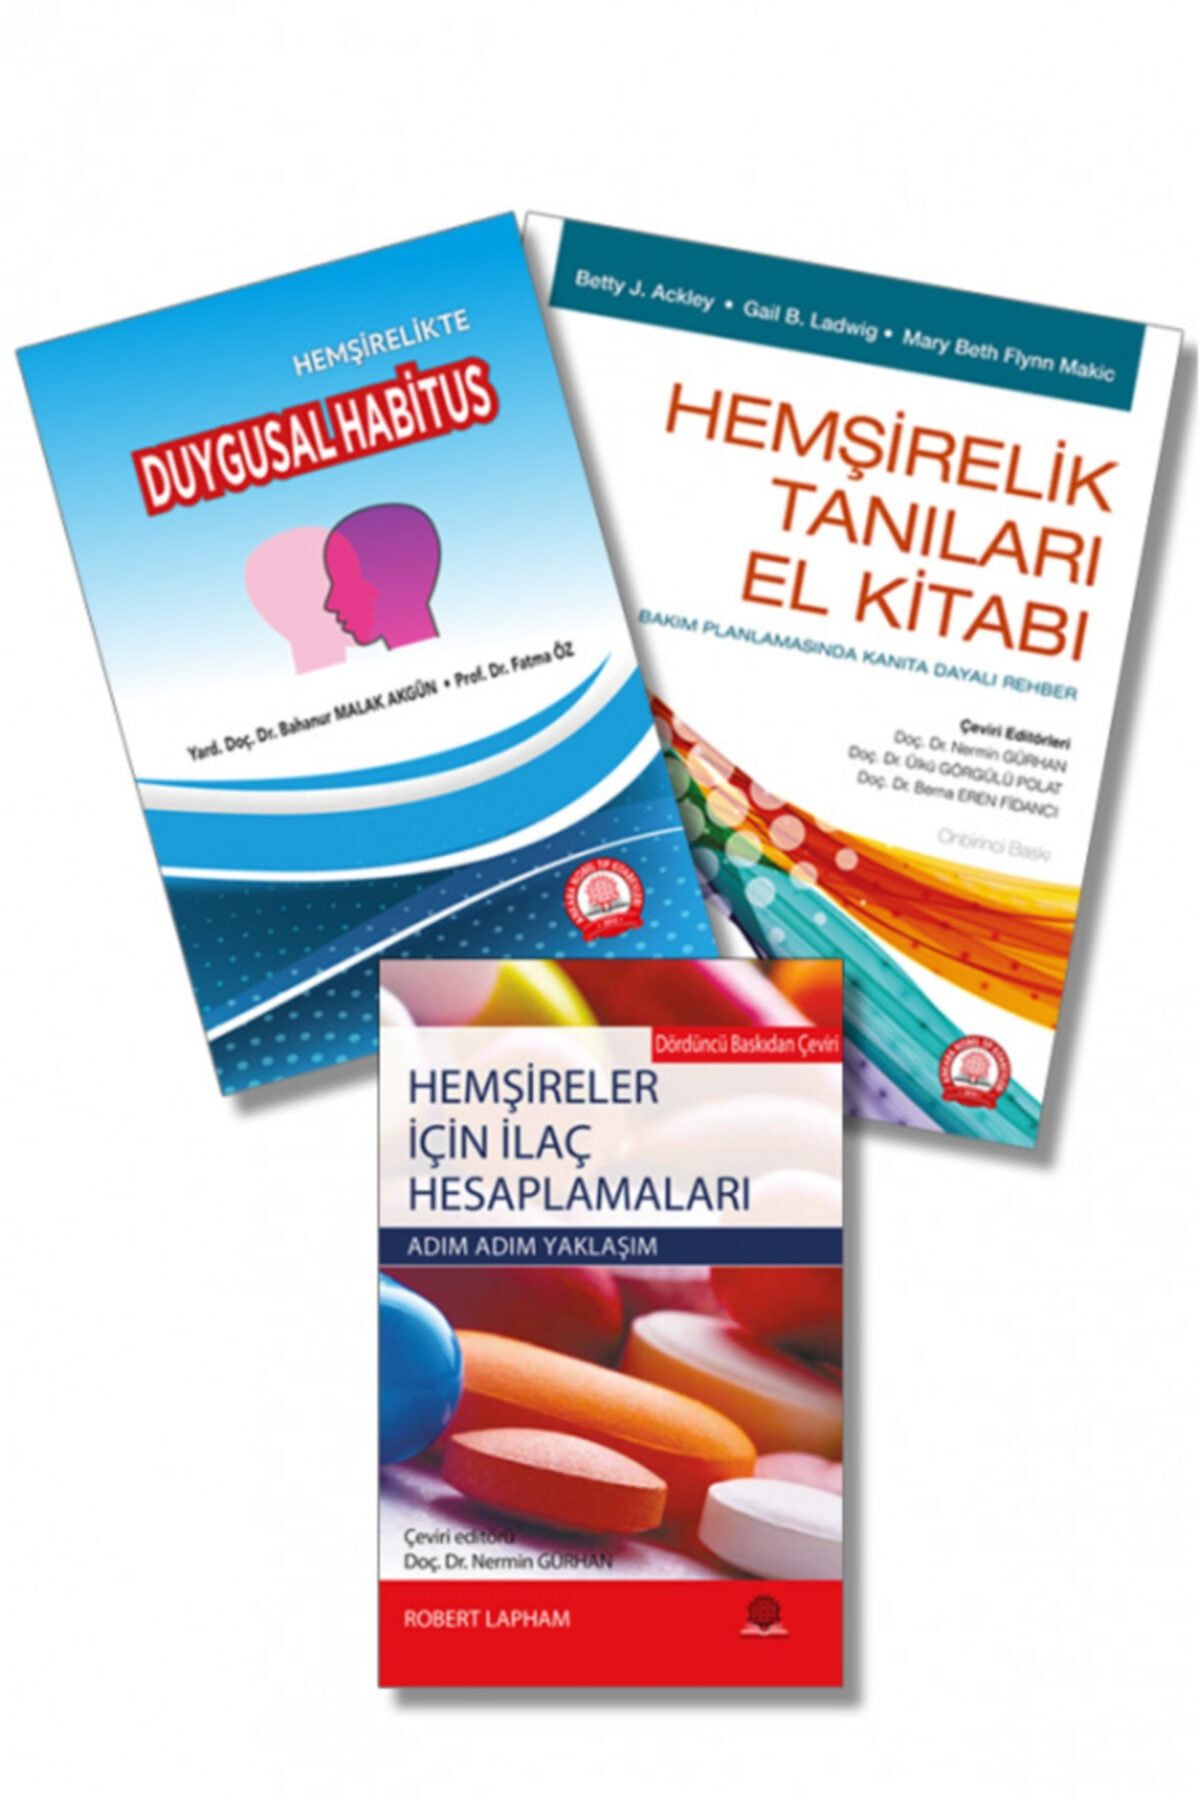 Ankara Nobel Tıp Kitapevleri Hemşirelik Tanıları El Kitabı+ Ilaç Hesaplamaları +duygusal Habitus